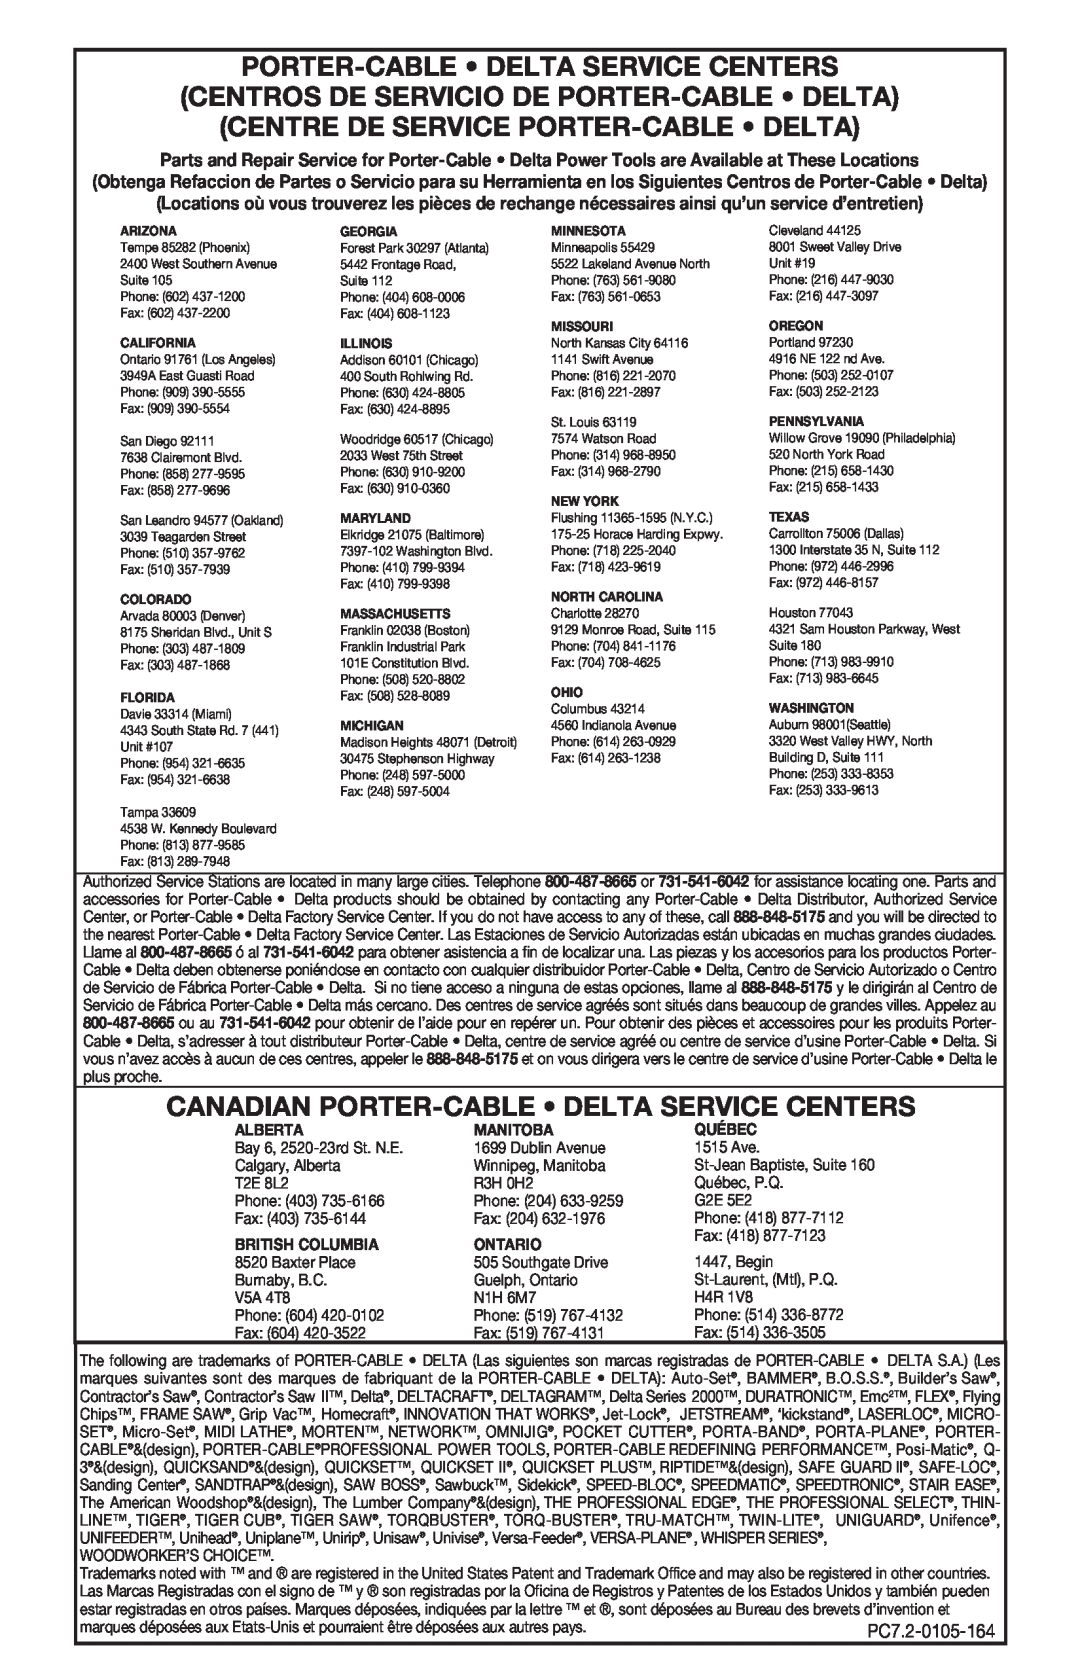 Porter-Cable 444vs Porter-Cable Delta Service Centers, Centros De Servicio De Porter-Cable Delta, Alberta, Manitoba 